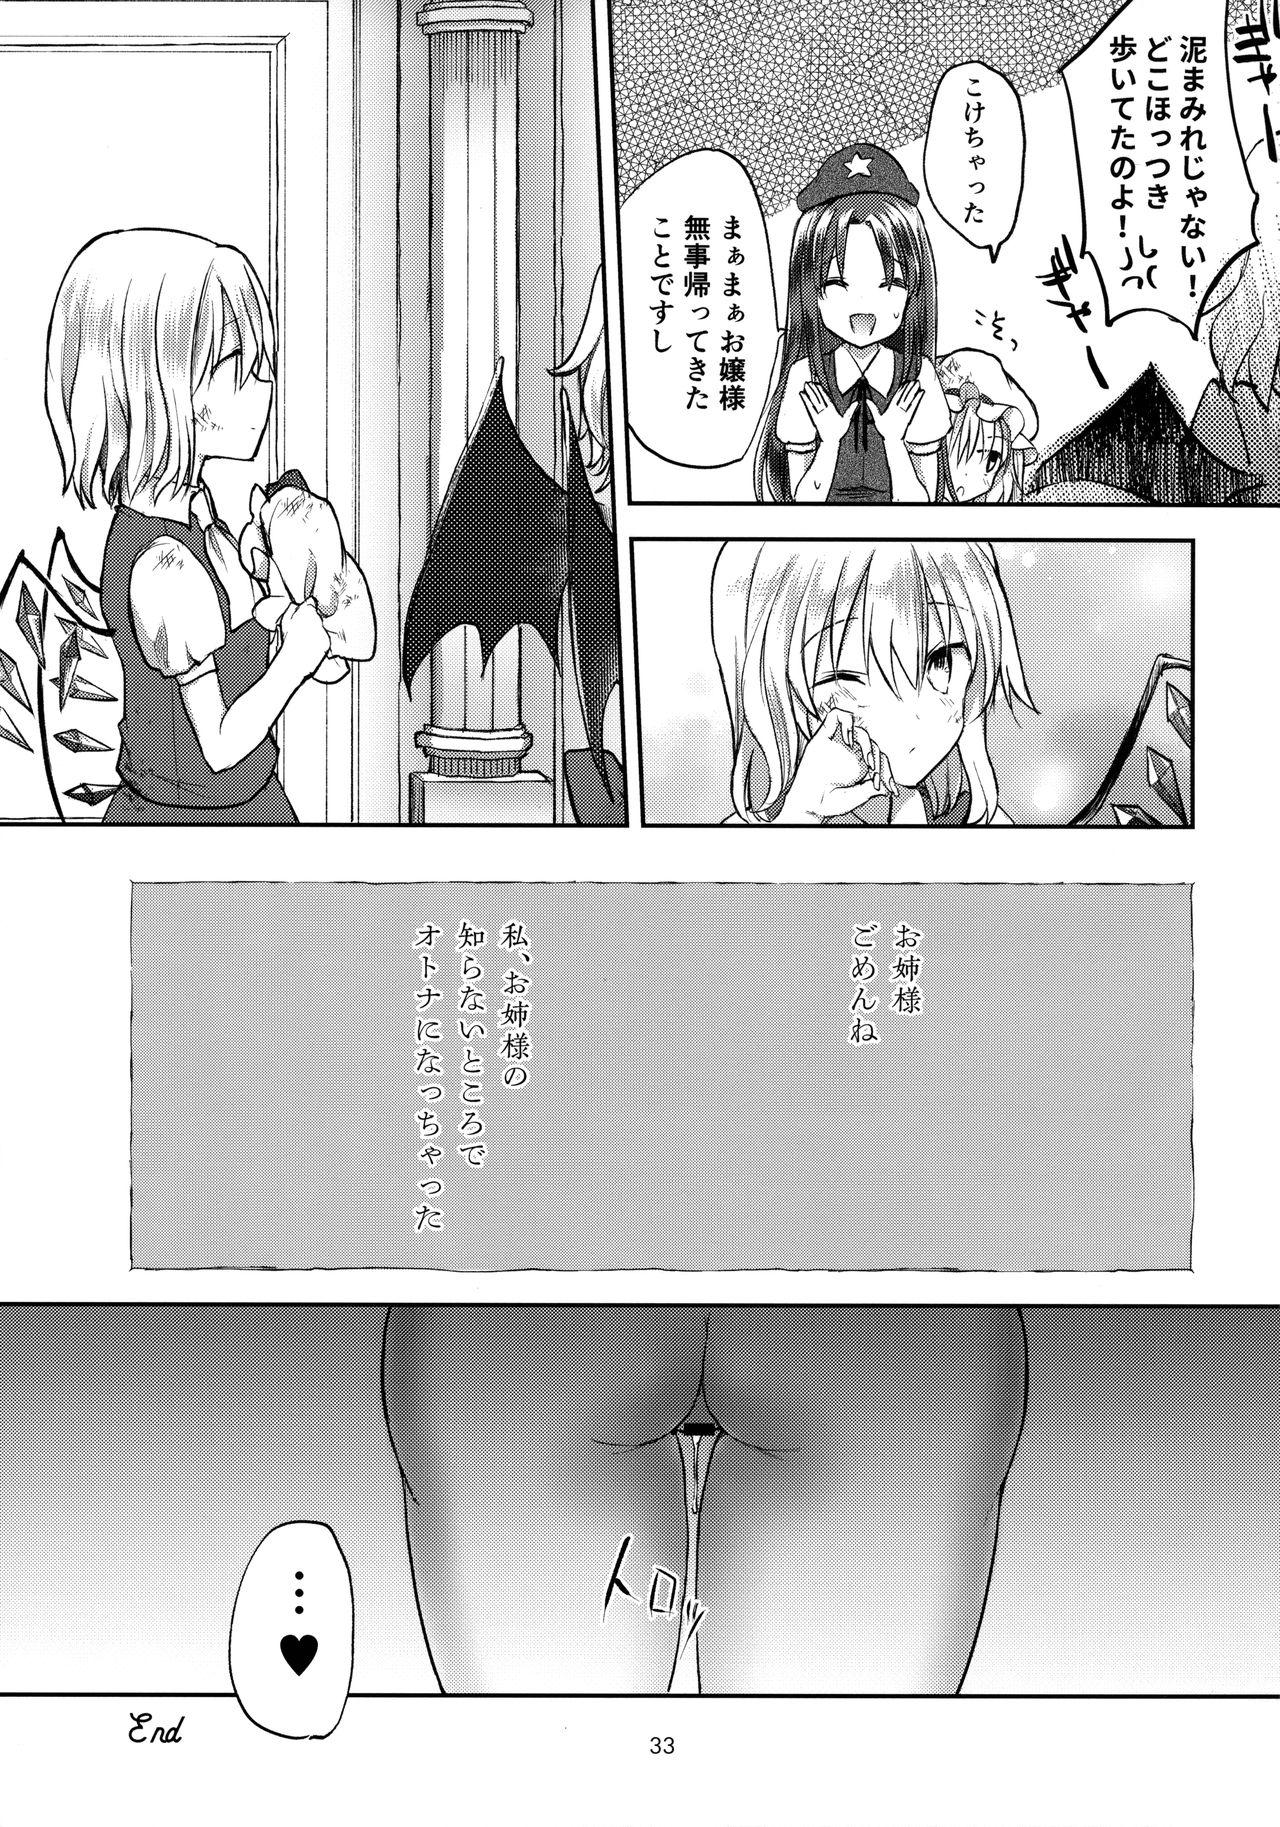 Dick Suck Koakuma Bitch Flan-chan - Touhou project Titties - Page 32